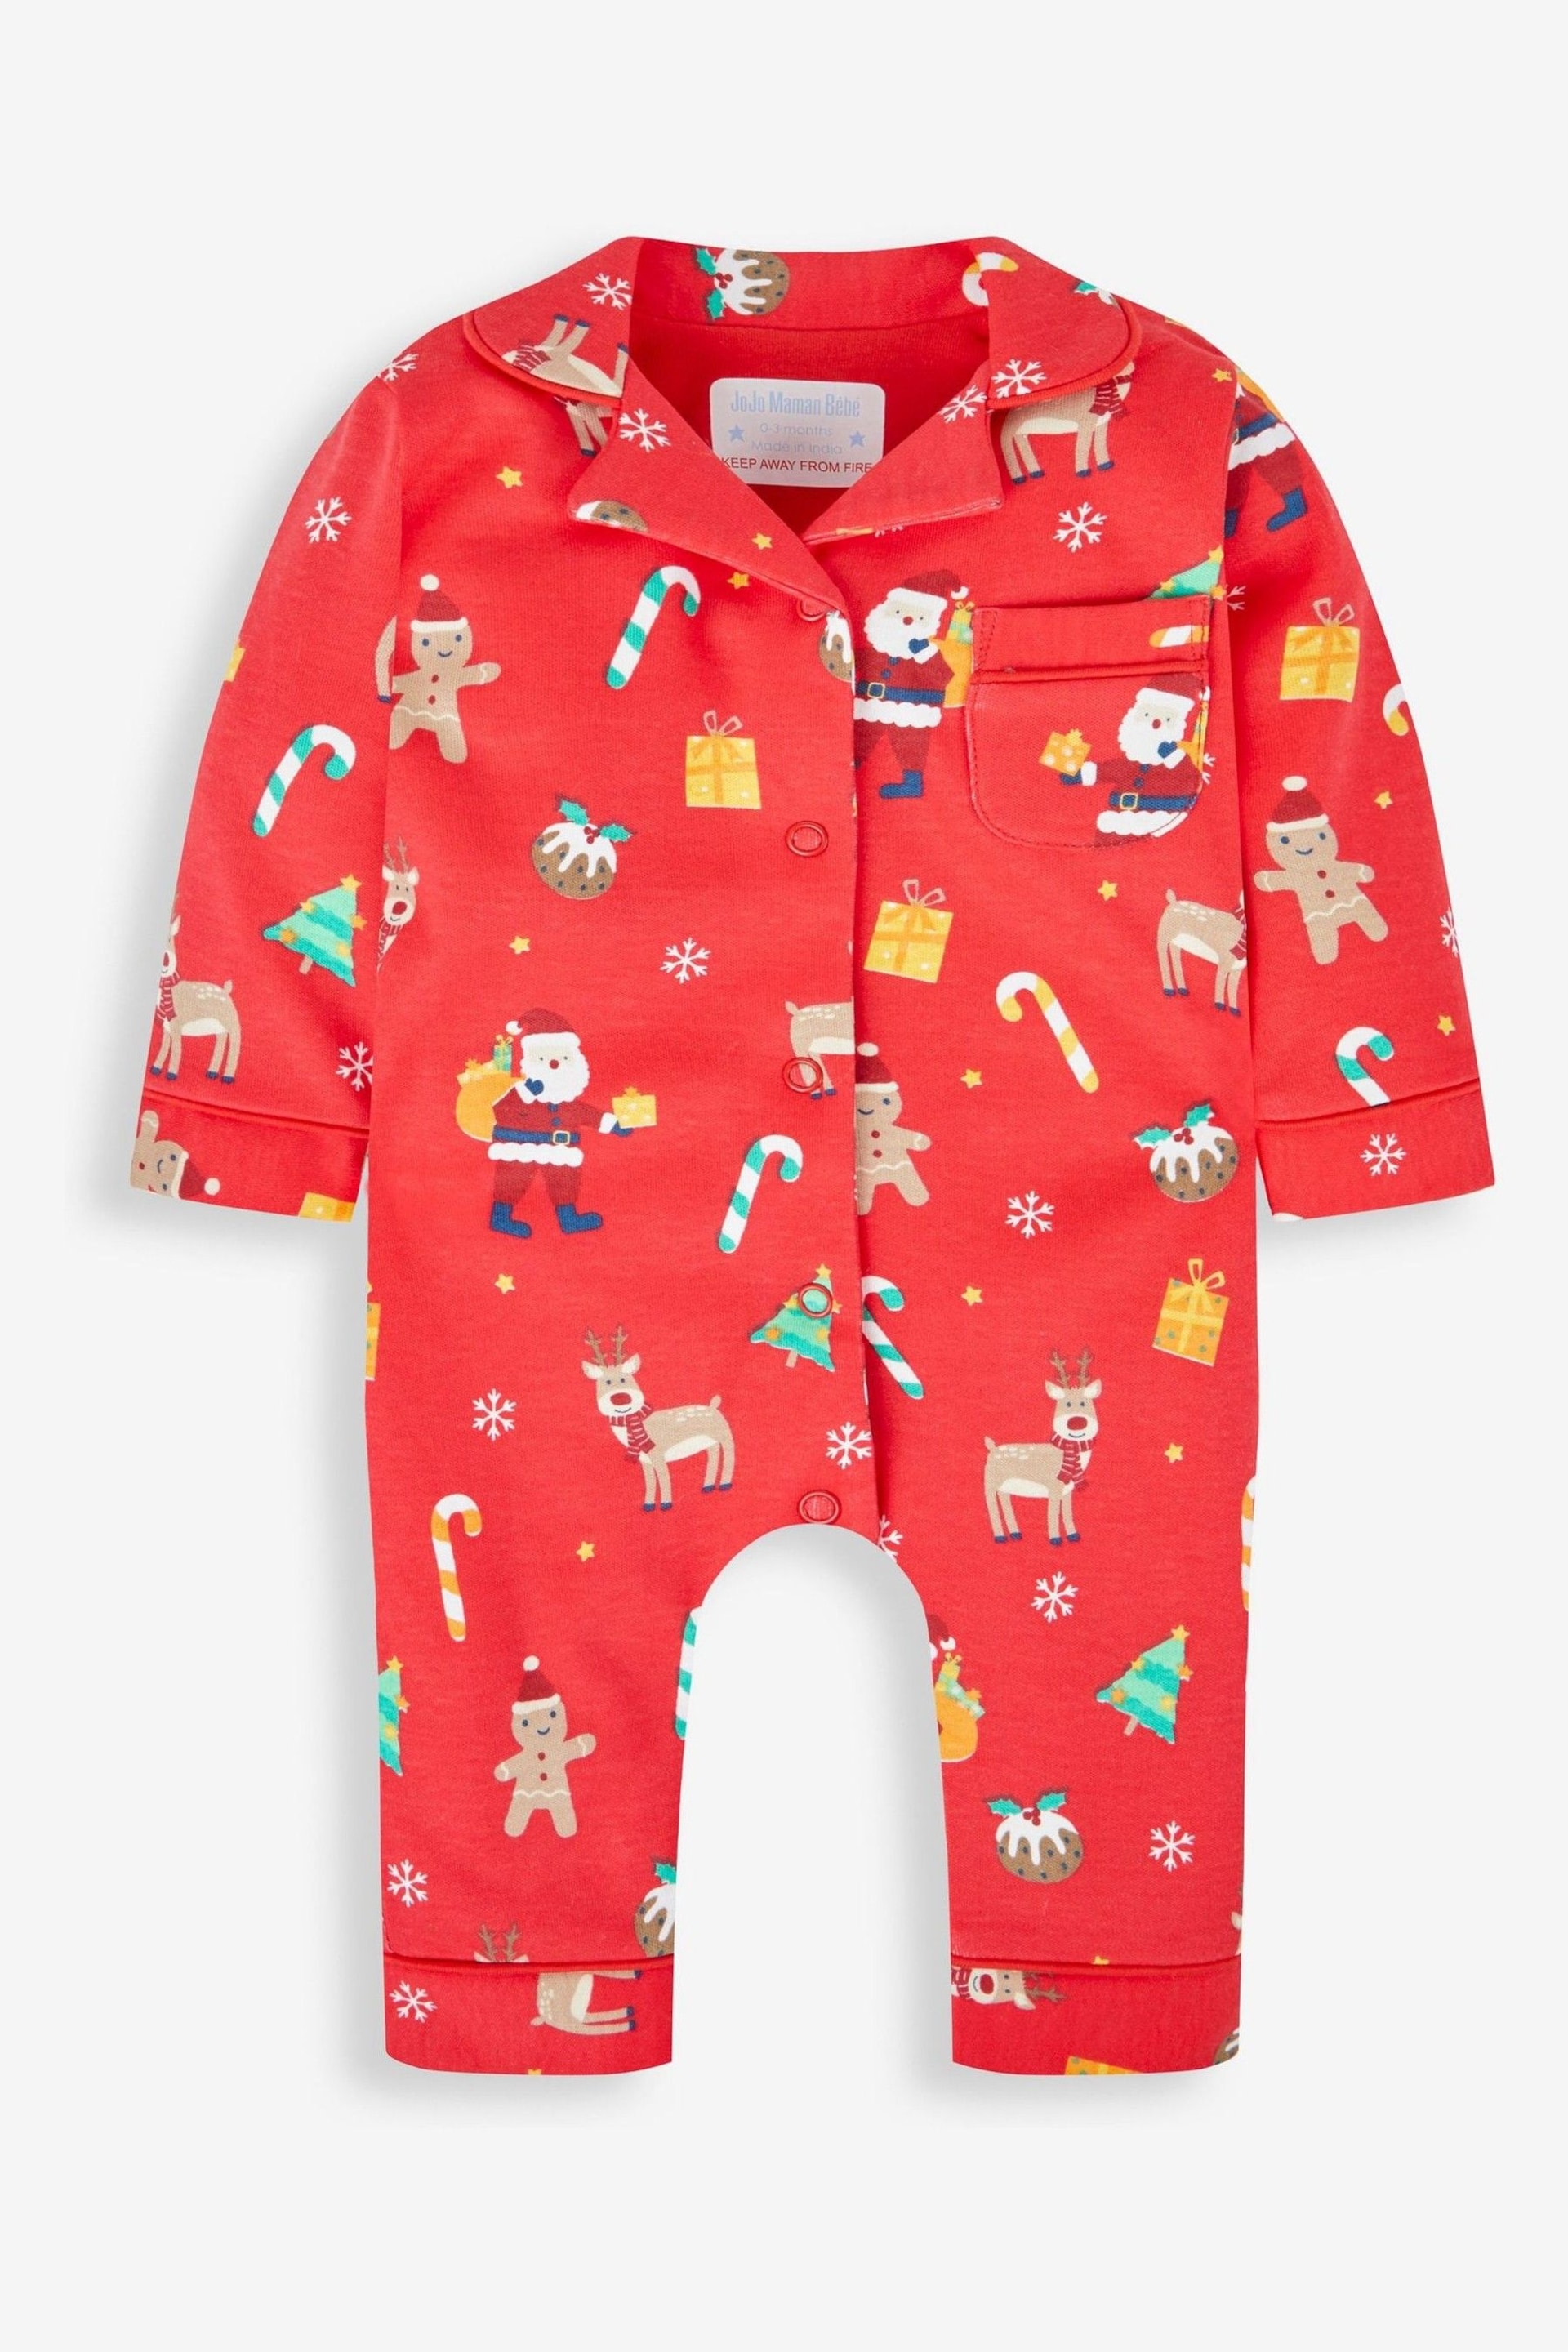 JoJo Maman Bébé Red Kids' Christmas All-In-One Pyjamas - Image 1 of 3